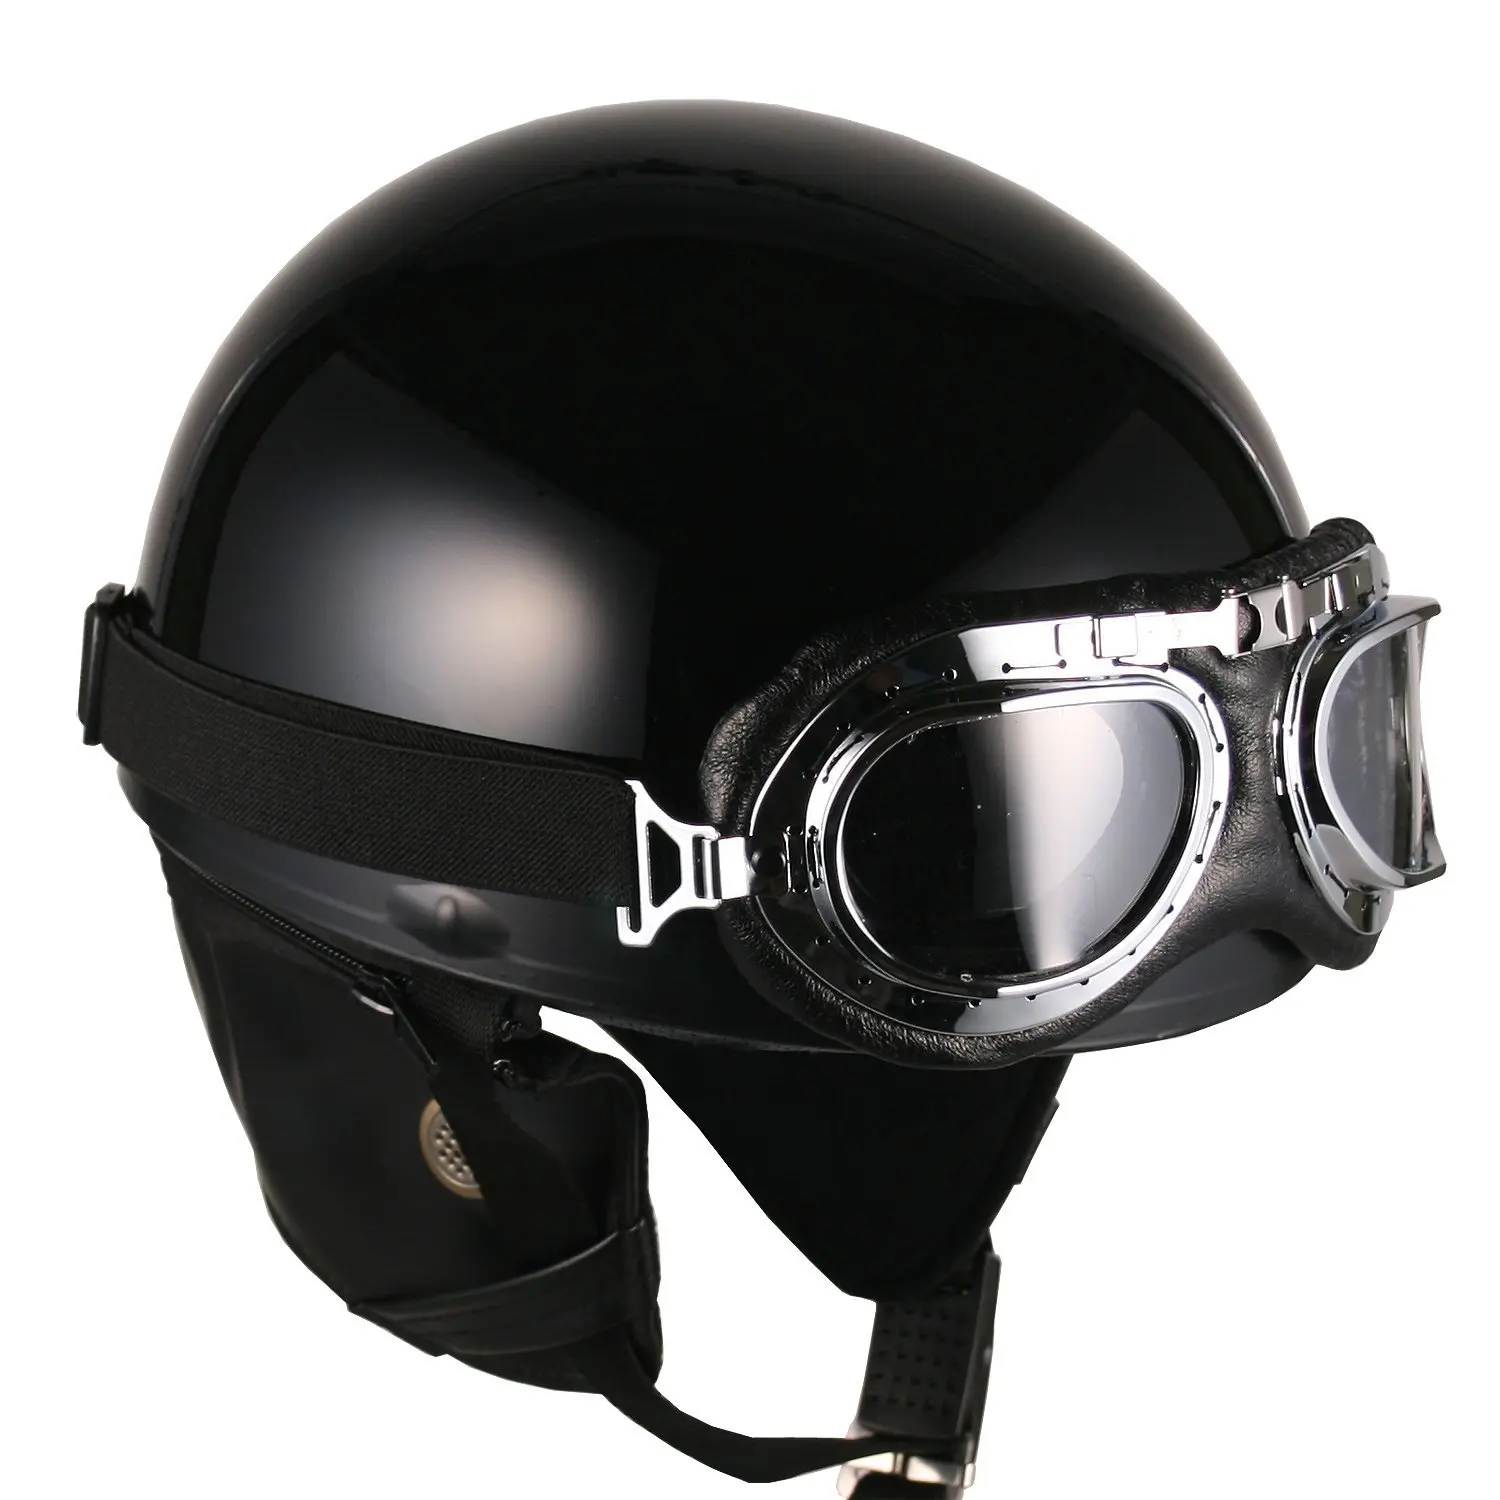 Buy Goggles Vintage German Style Half Helmet (White Blue-star , Large) Motorcycle Biker Cruiser